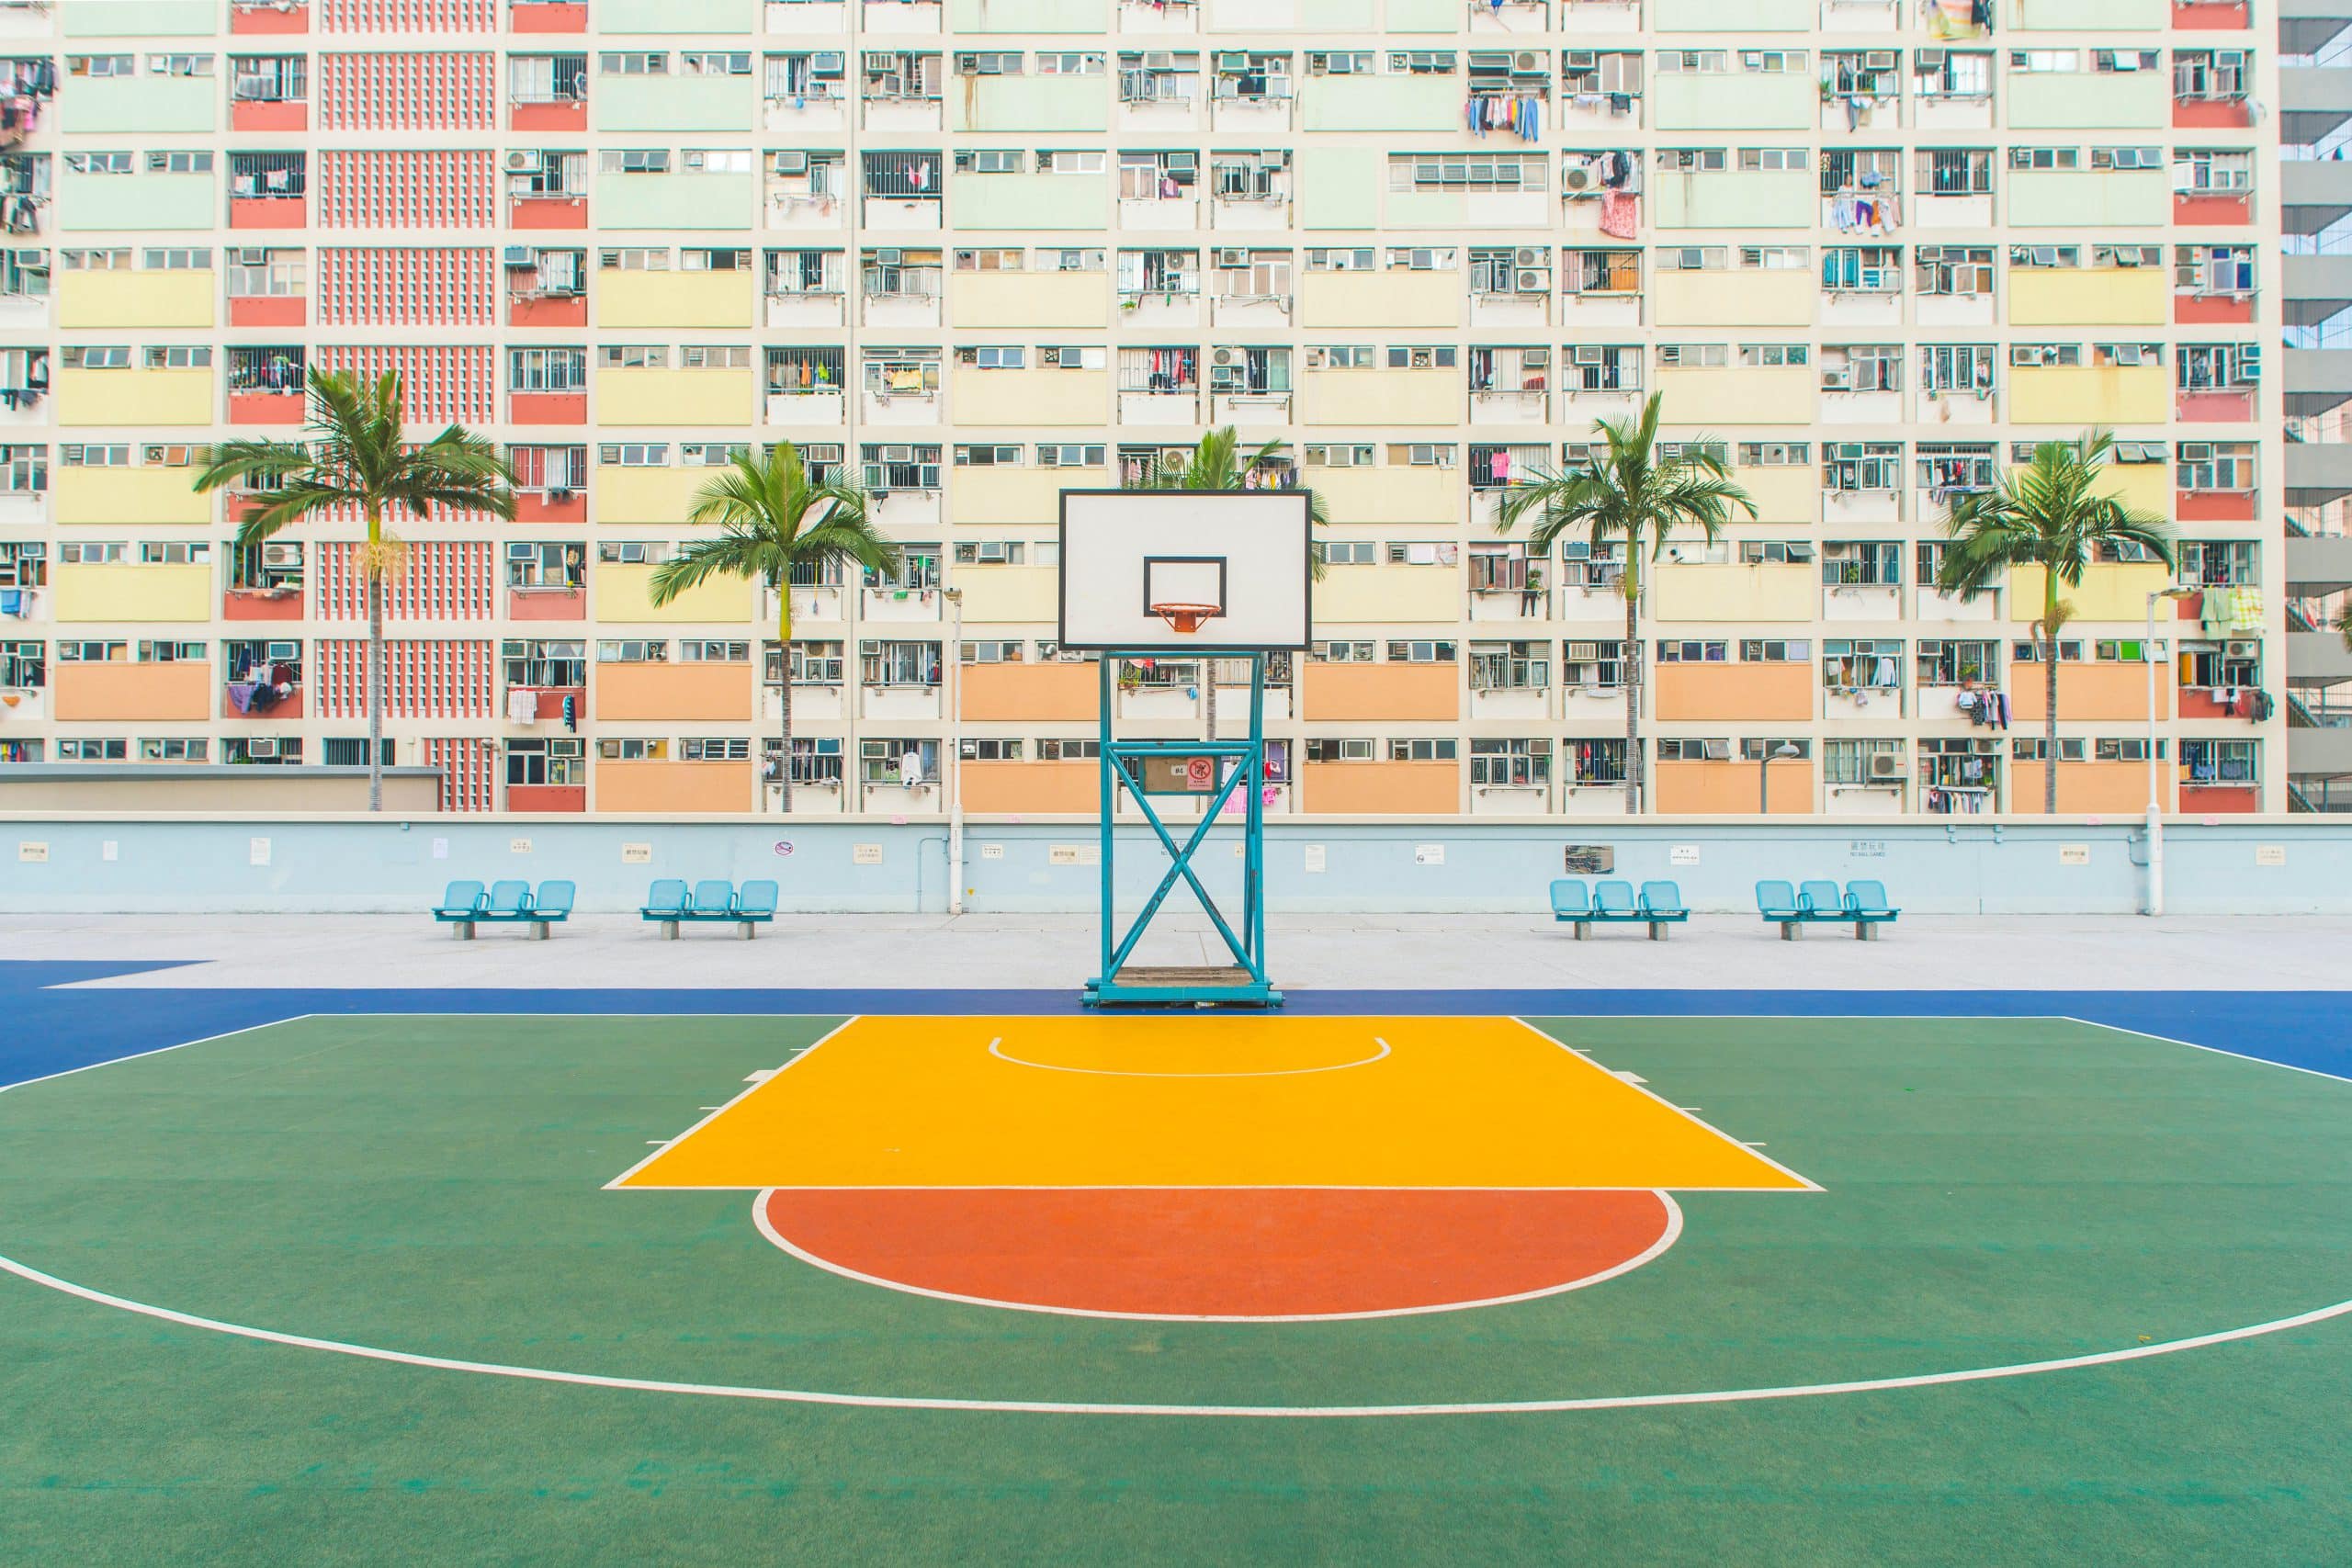 basketball gym near concrete building